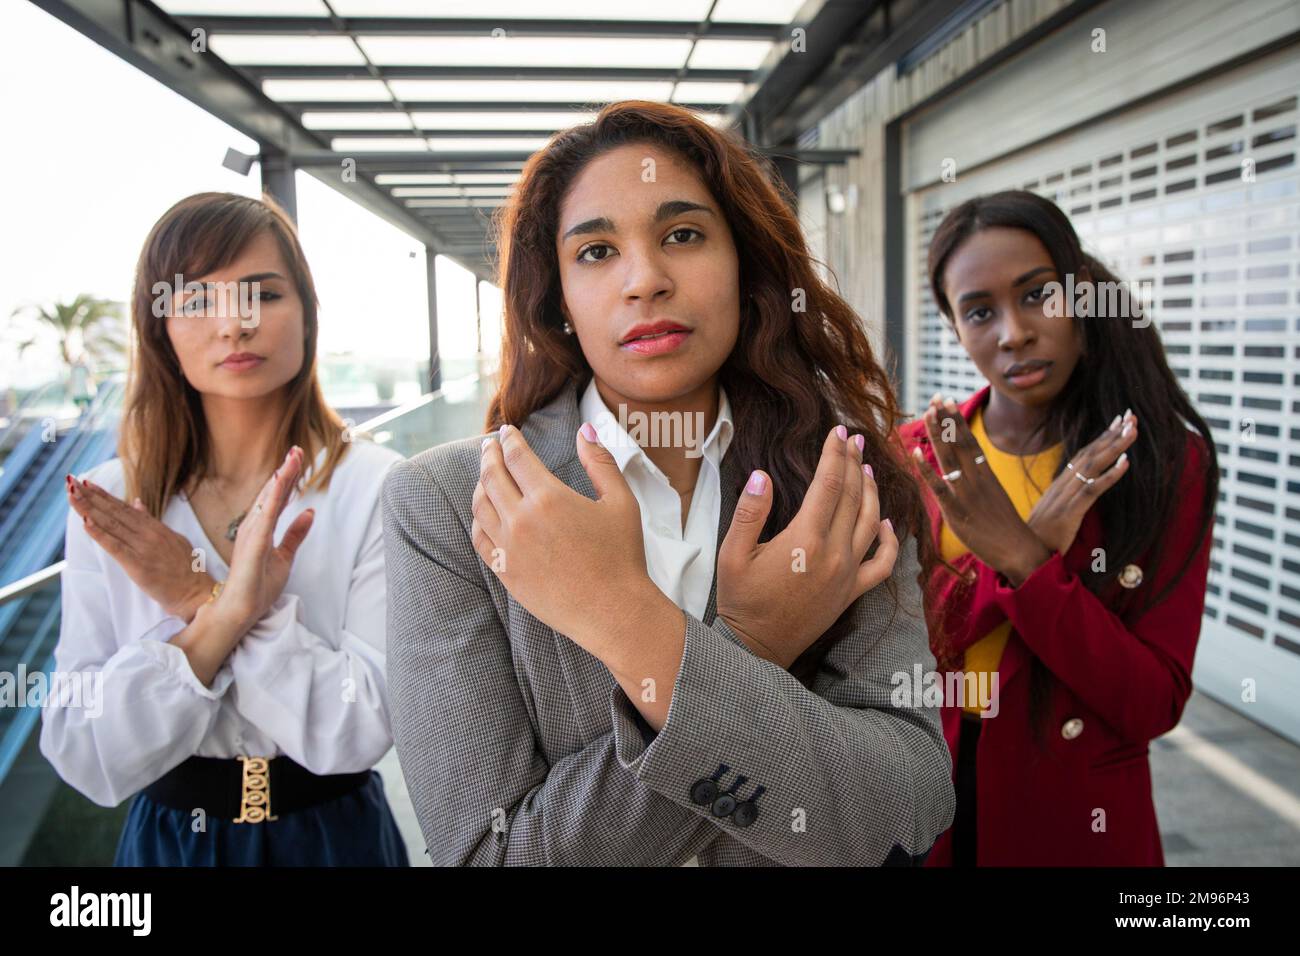 Trois femmes avec leurs armes croisées brisent le mouvement de la partialité à l'appui de la Journée internationale de la femme Banque D'Images